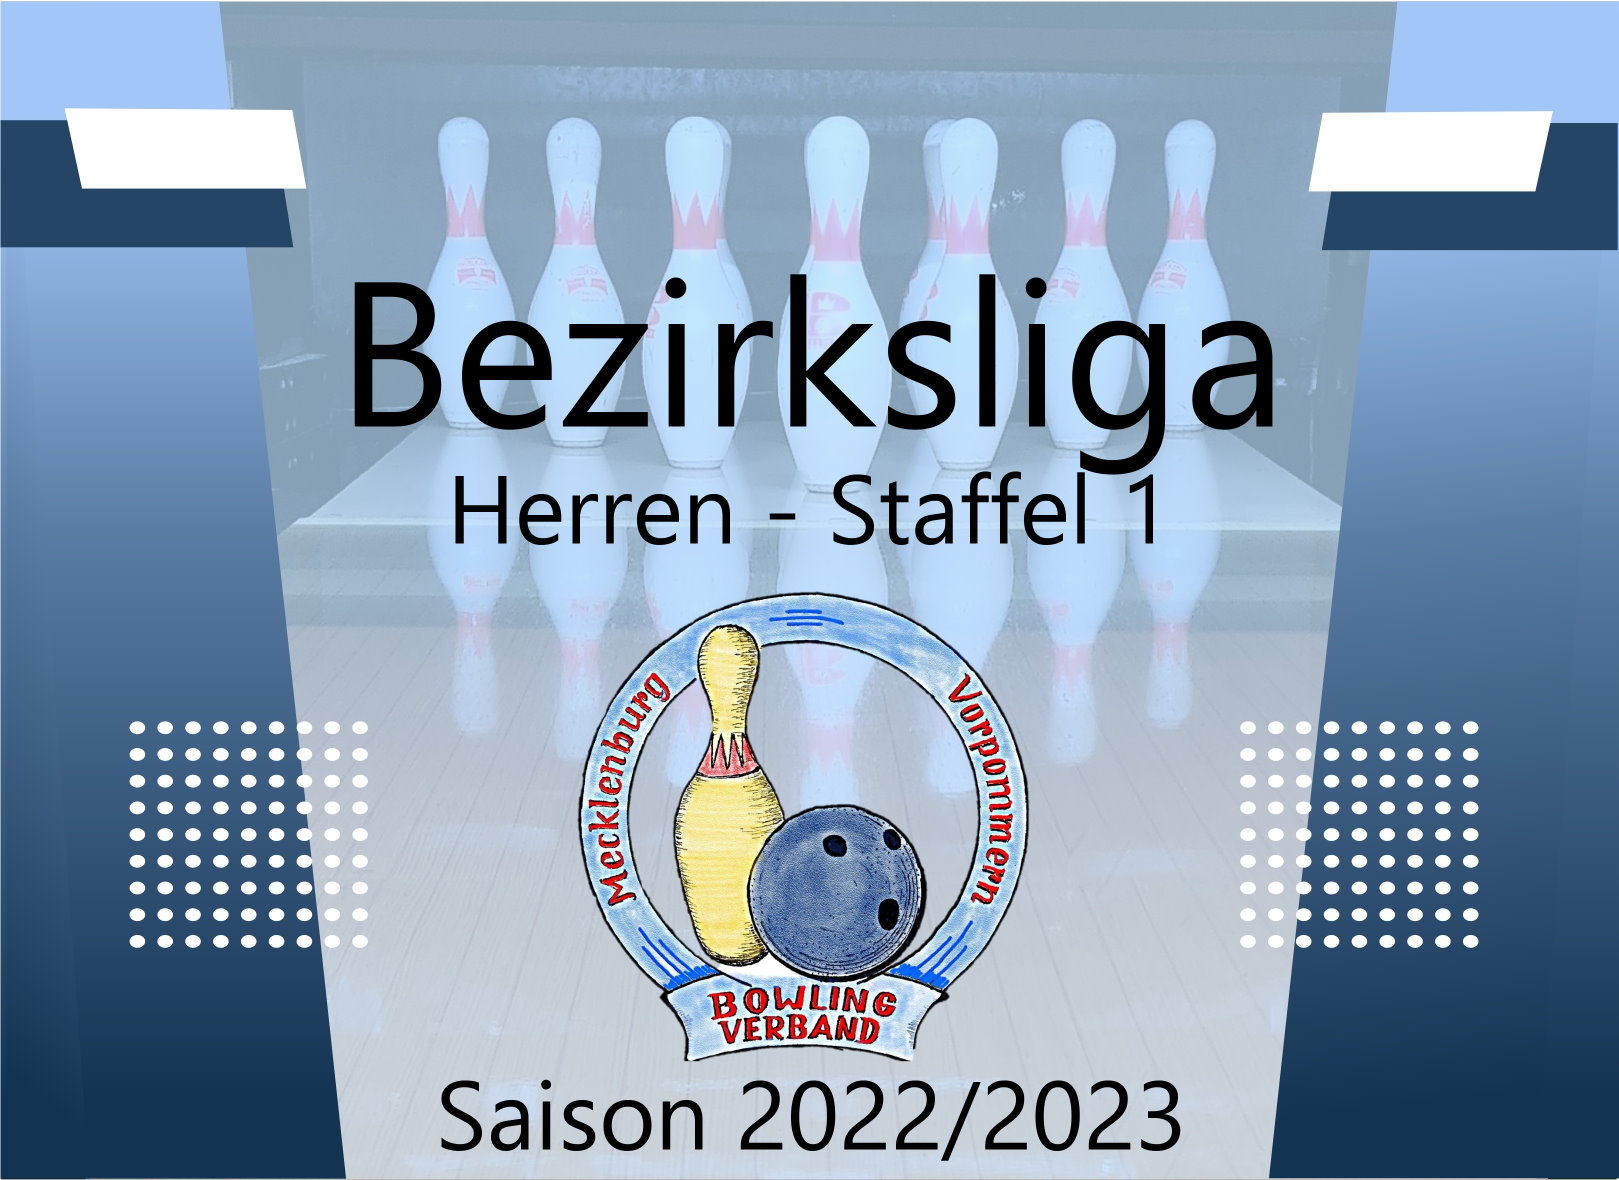 Bezirksliga Herren Staffel 1 - 2. Spieltag